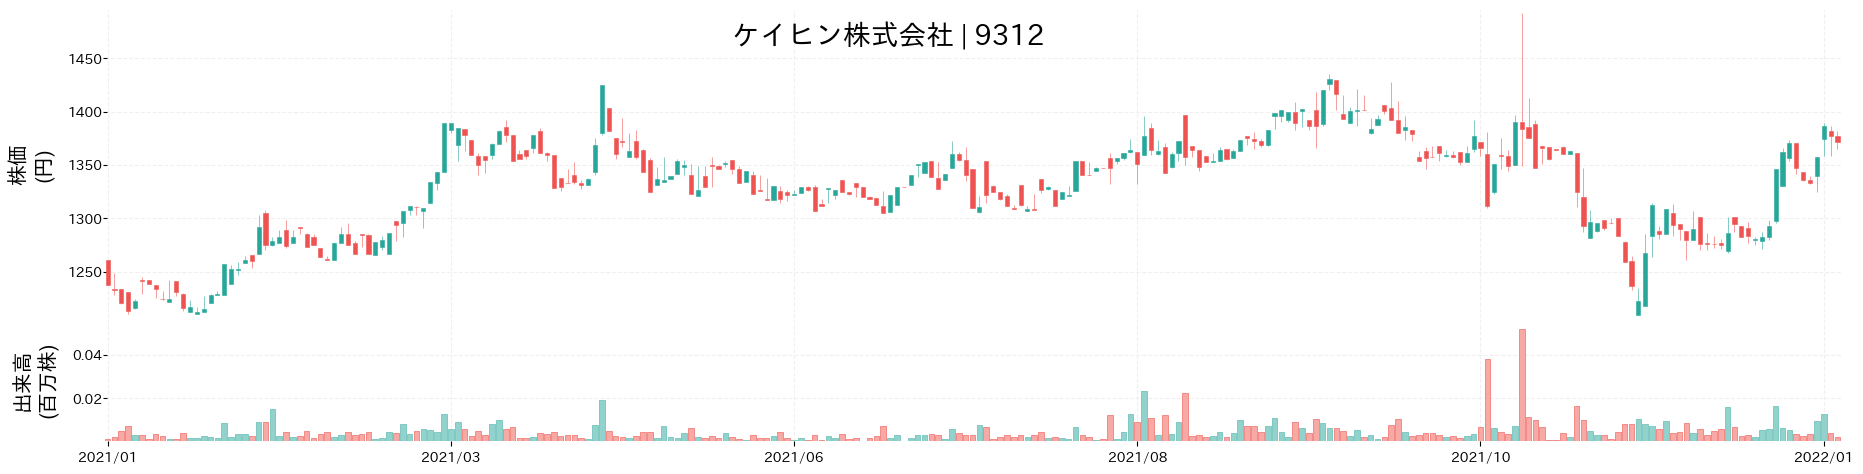 ケイヒンの株価推移(2021)